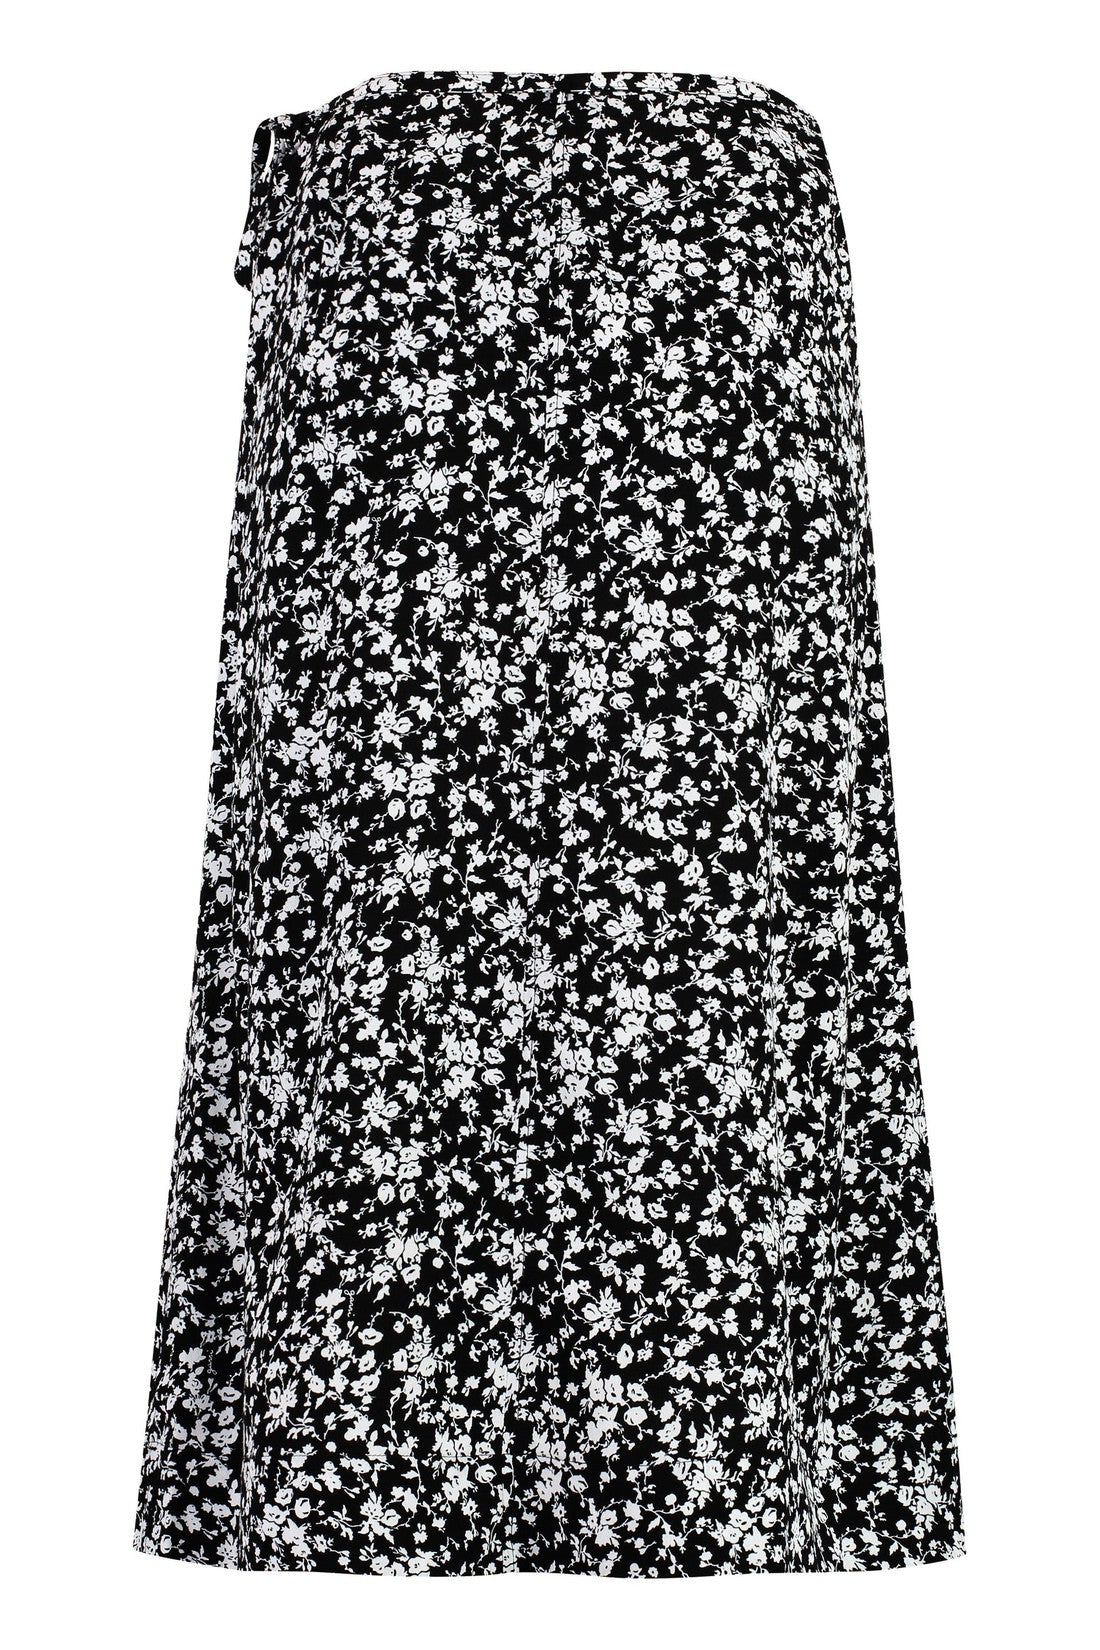 GANNI-OUTLET-SALE-Printed crepe skirt-ARCHIVIST